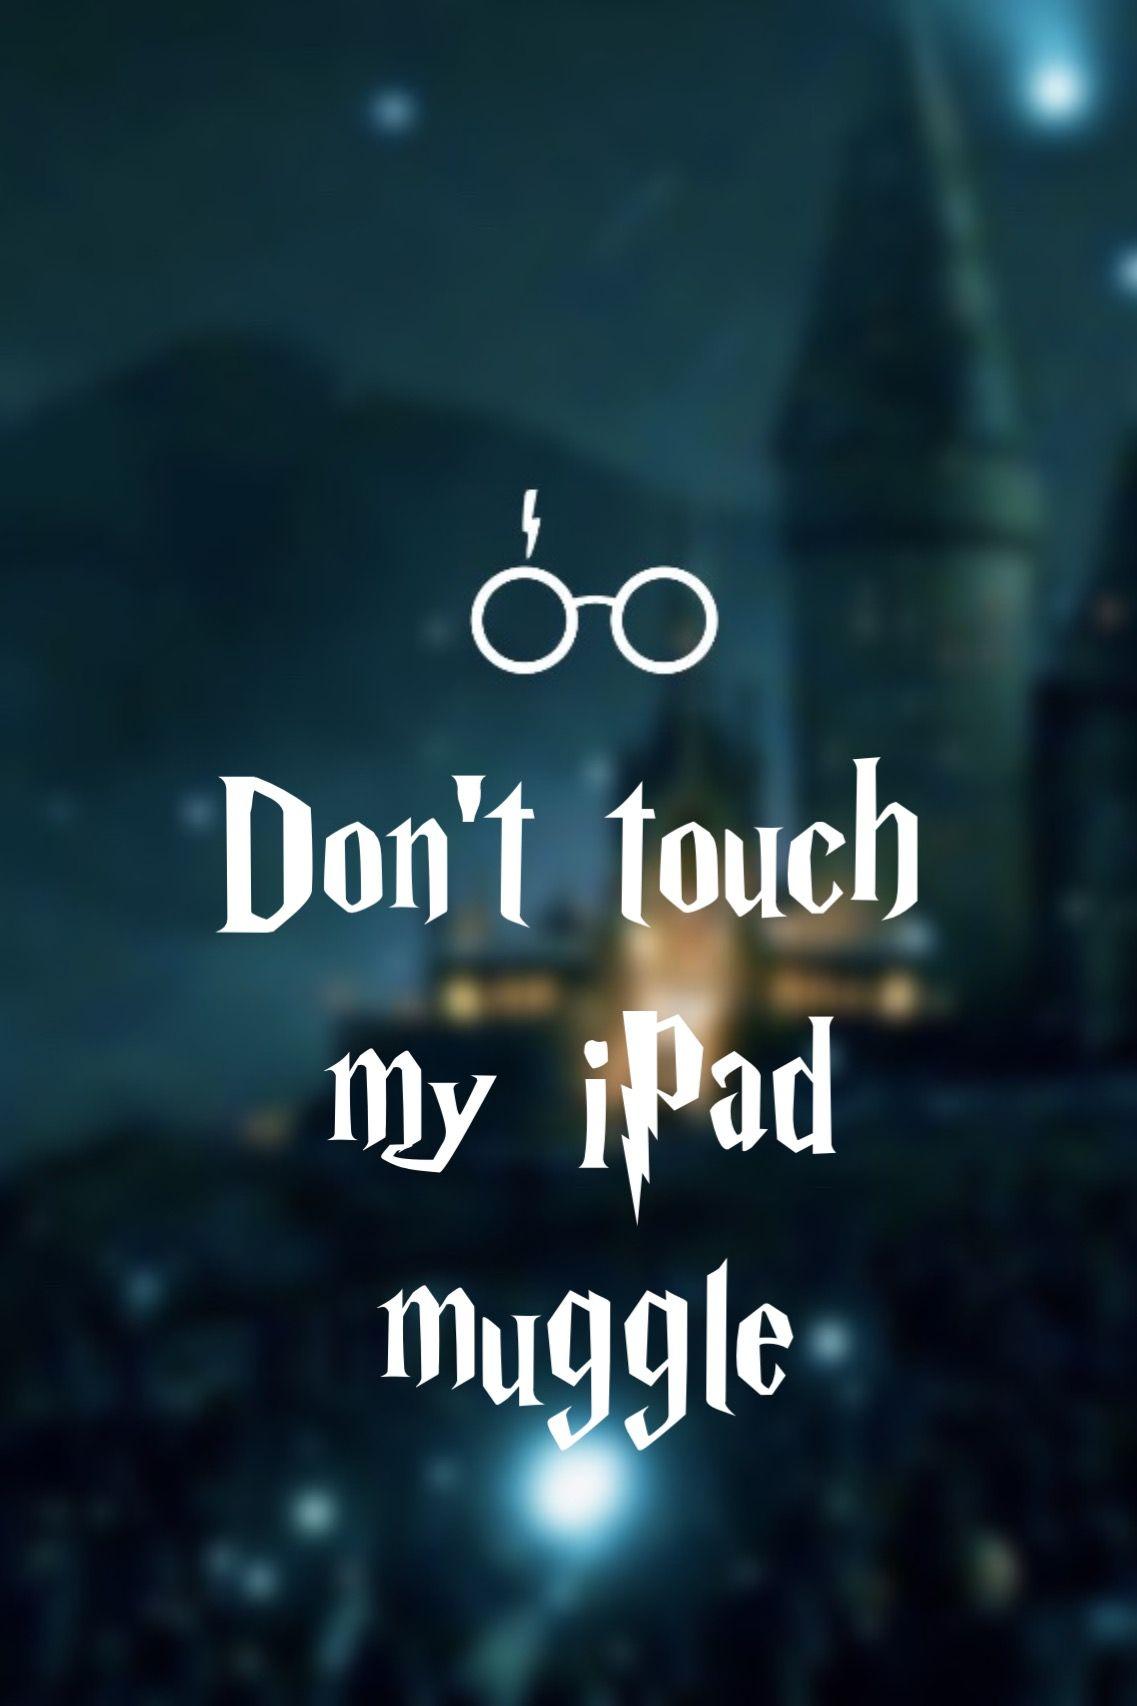 Harry Potter cool Wallpaper APK pour Android Télécharger